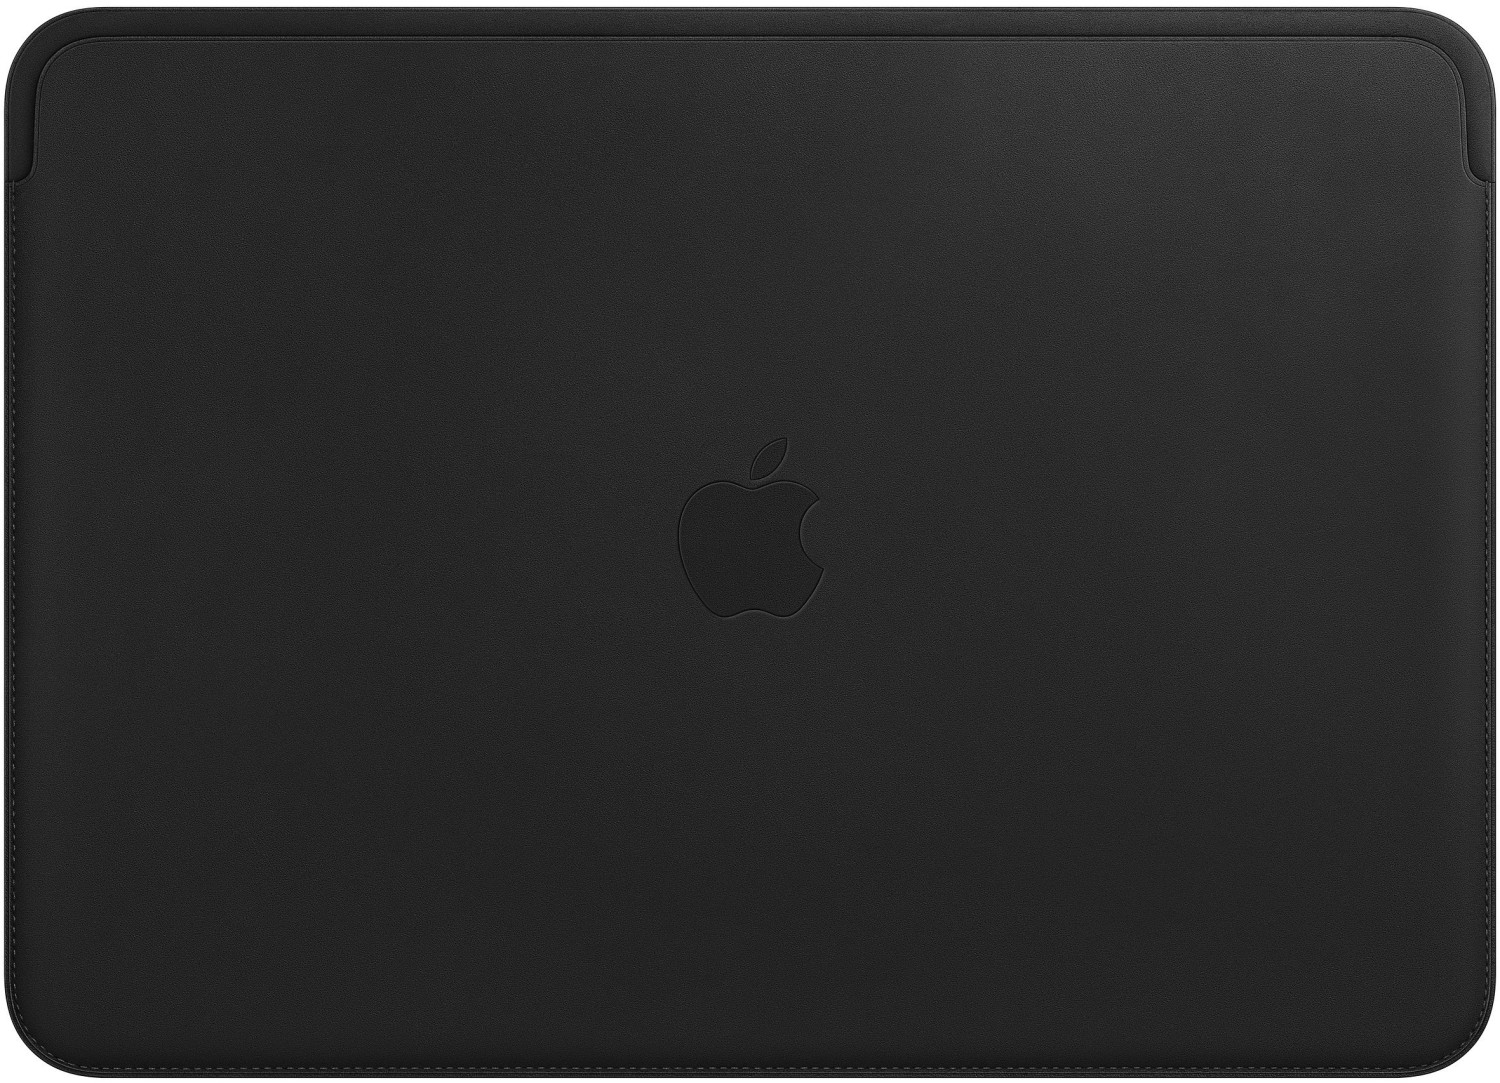 Apple ﻿Housse cuir pour MacBook 13 pouces - Saddle Brown